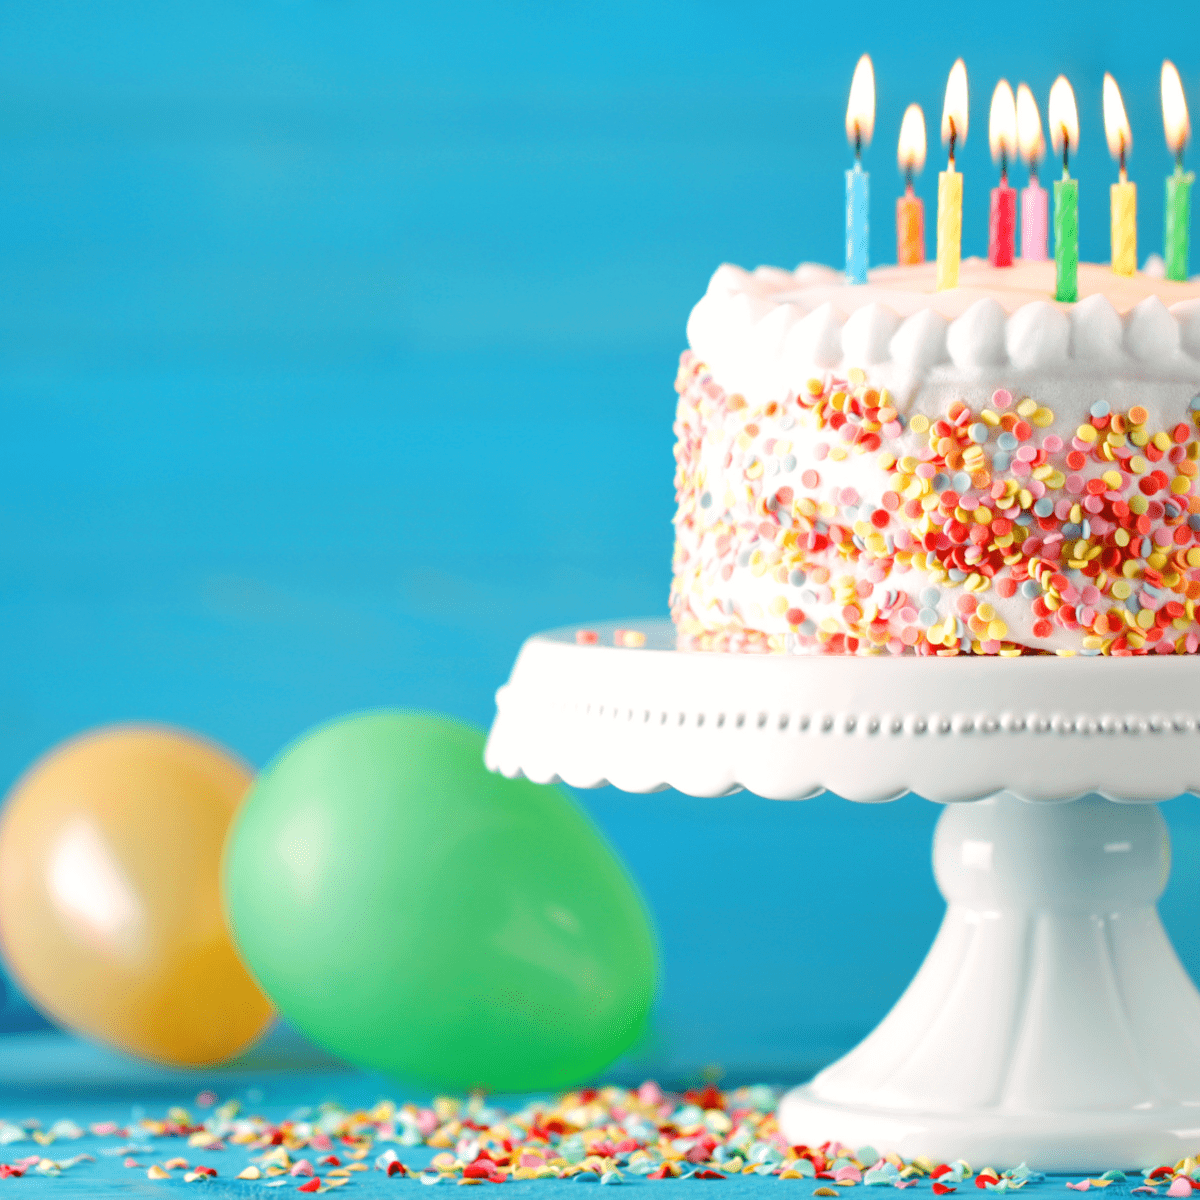 Oprah Airbrushes Cake for Gayle King Birthday